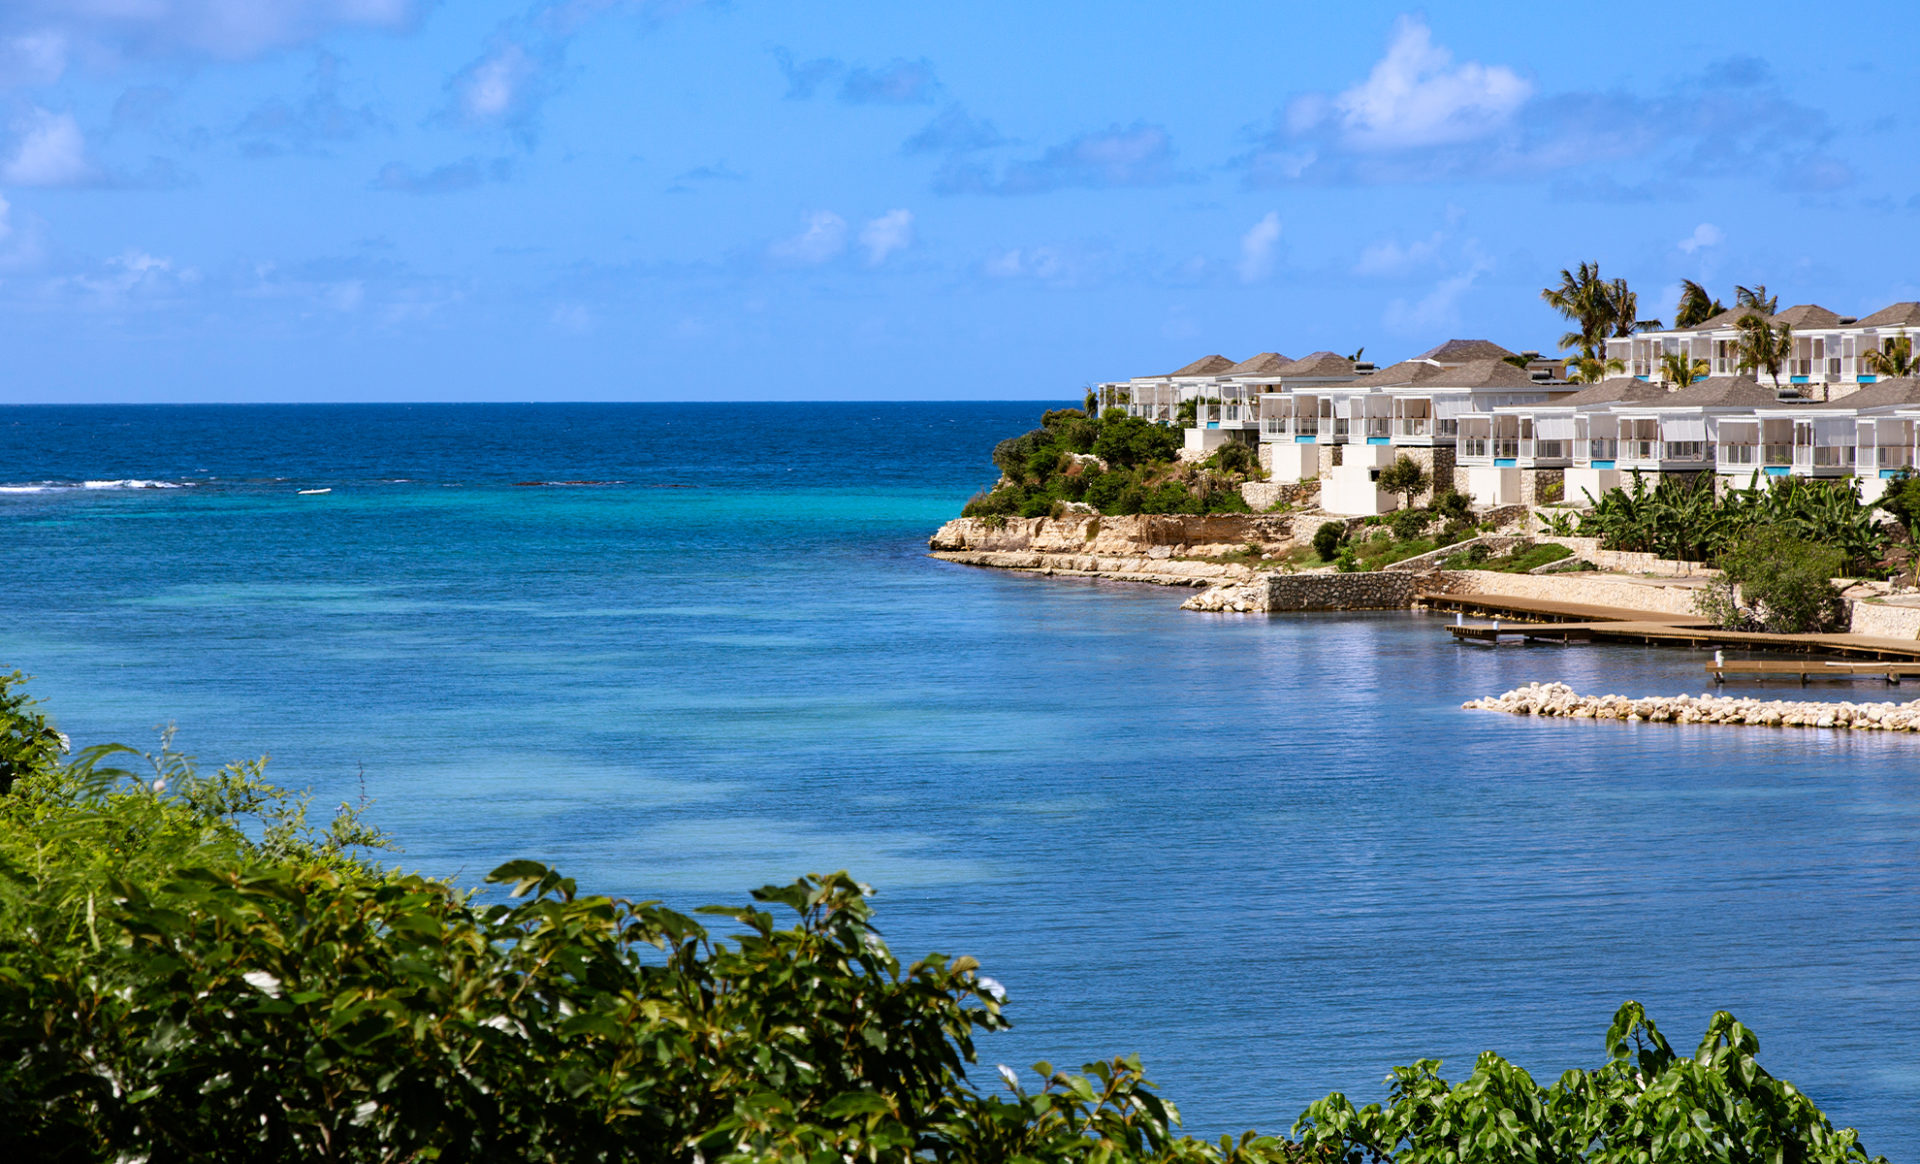 HAMMOCK-COVE--Antigua-sea-view